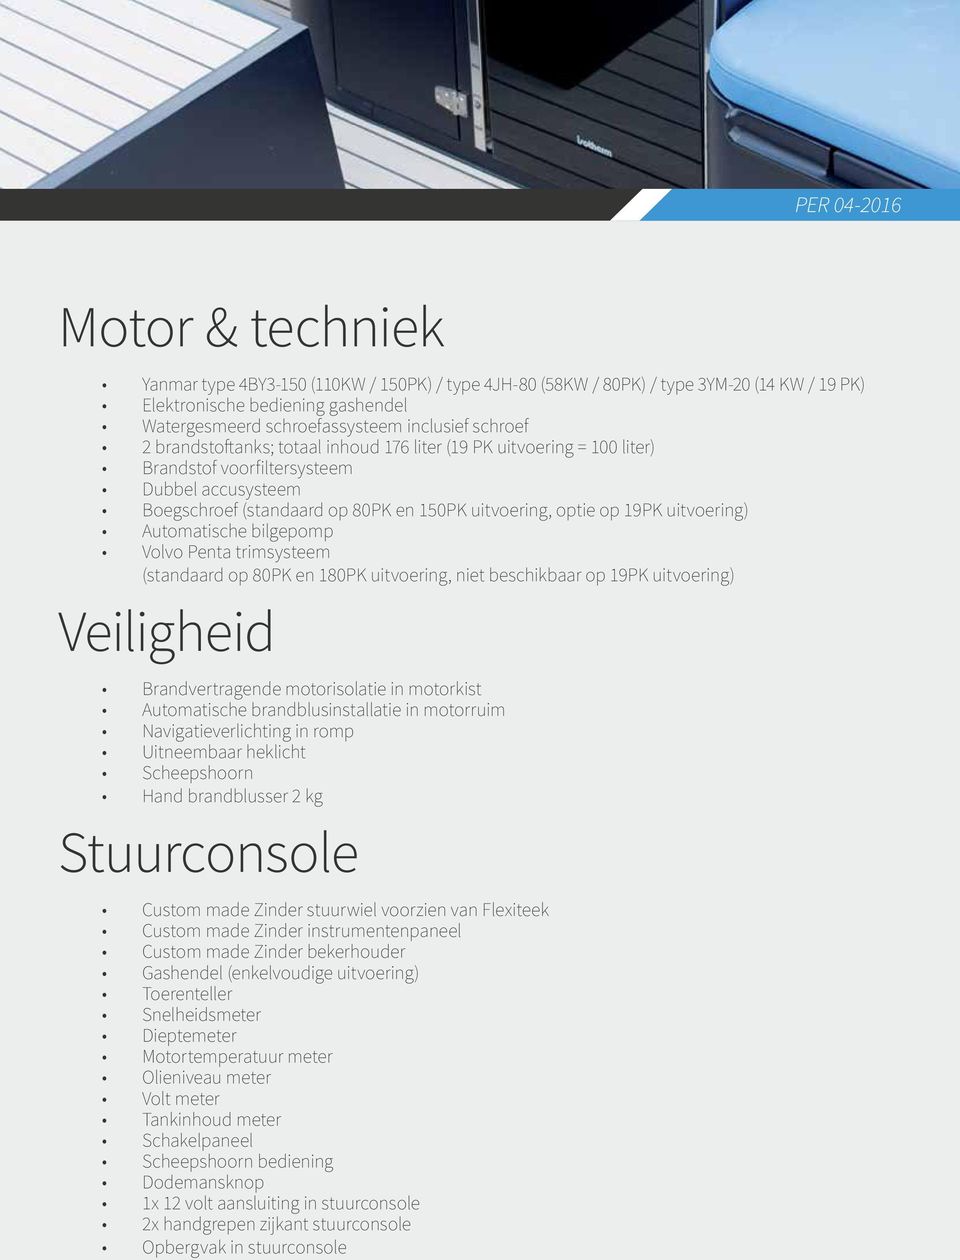 Automatische bilgepomp Volvo Penta trimsysteem (standaard op 80PK en 180PK uitvoering, niet beschikbaar op 19PK uitvoering) Veiligheid Brandvertragende motorisolatie in motorkist Automatische